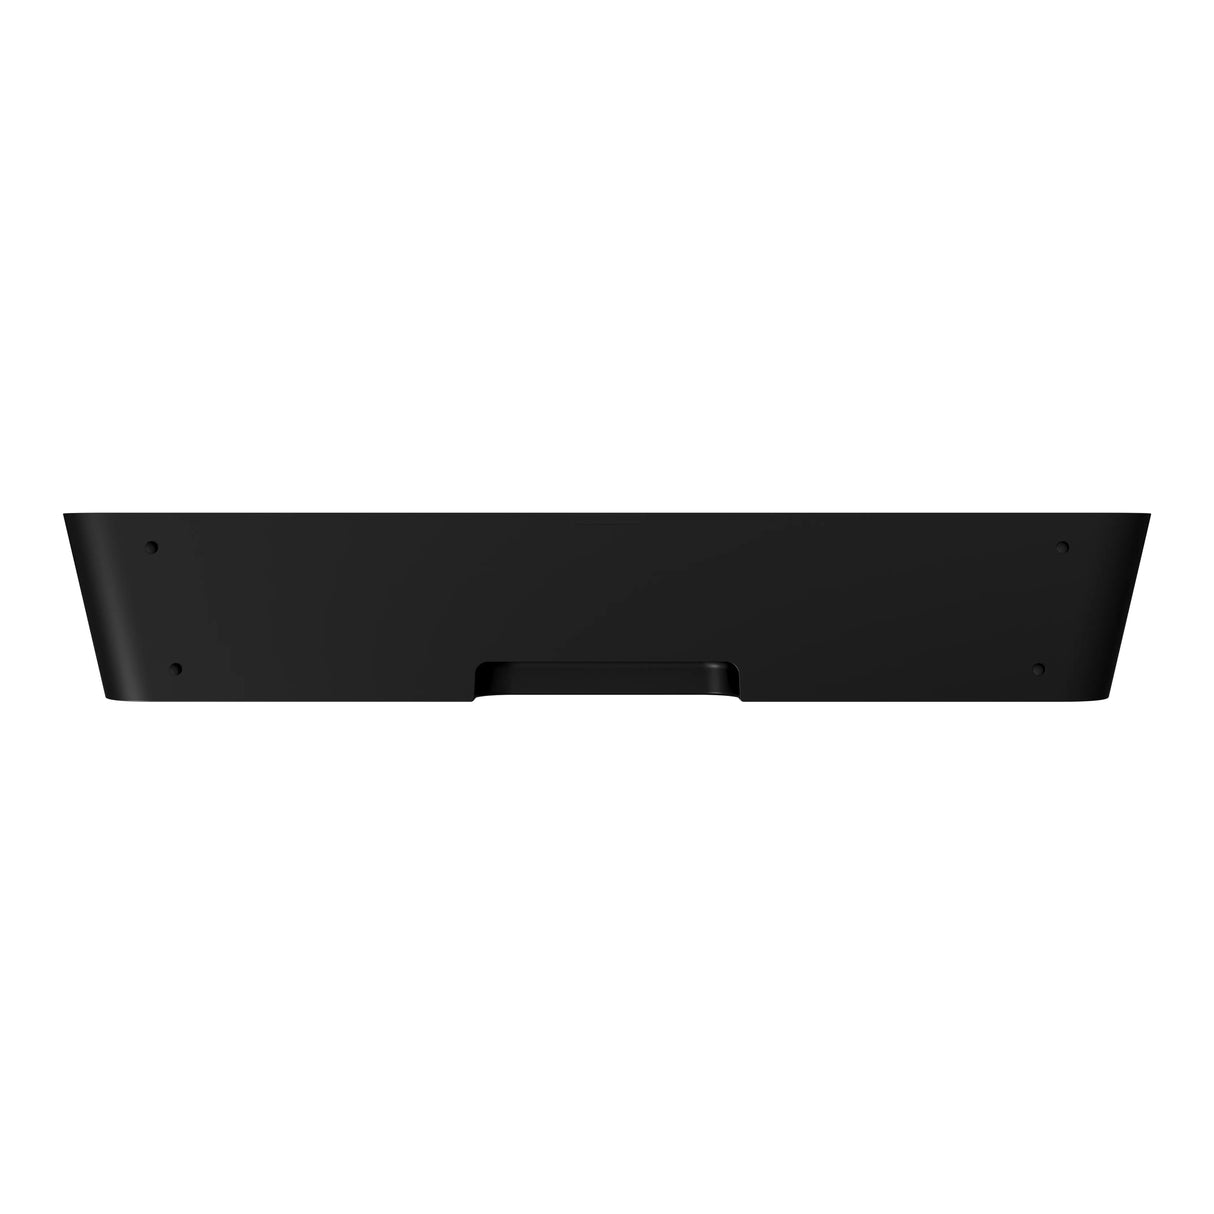 Sonos Ray - Compact Soundbar (Black)